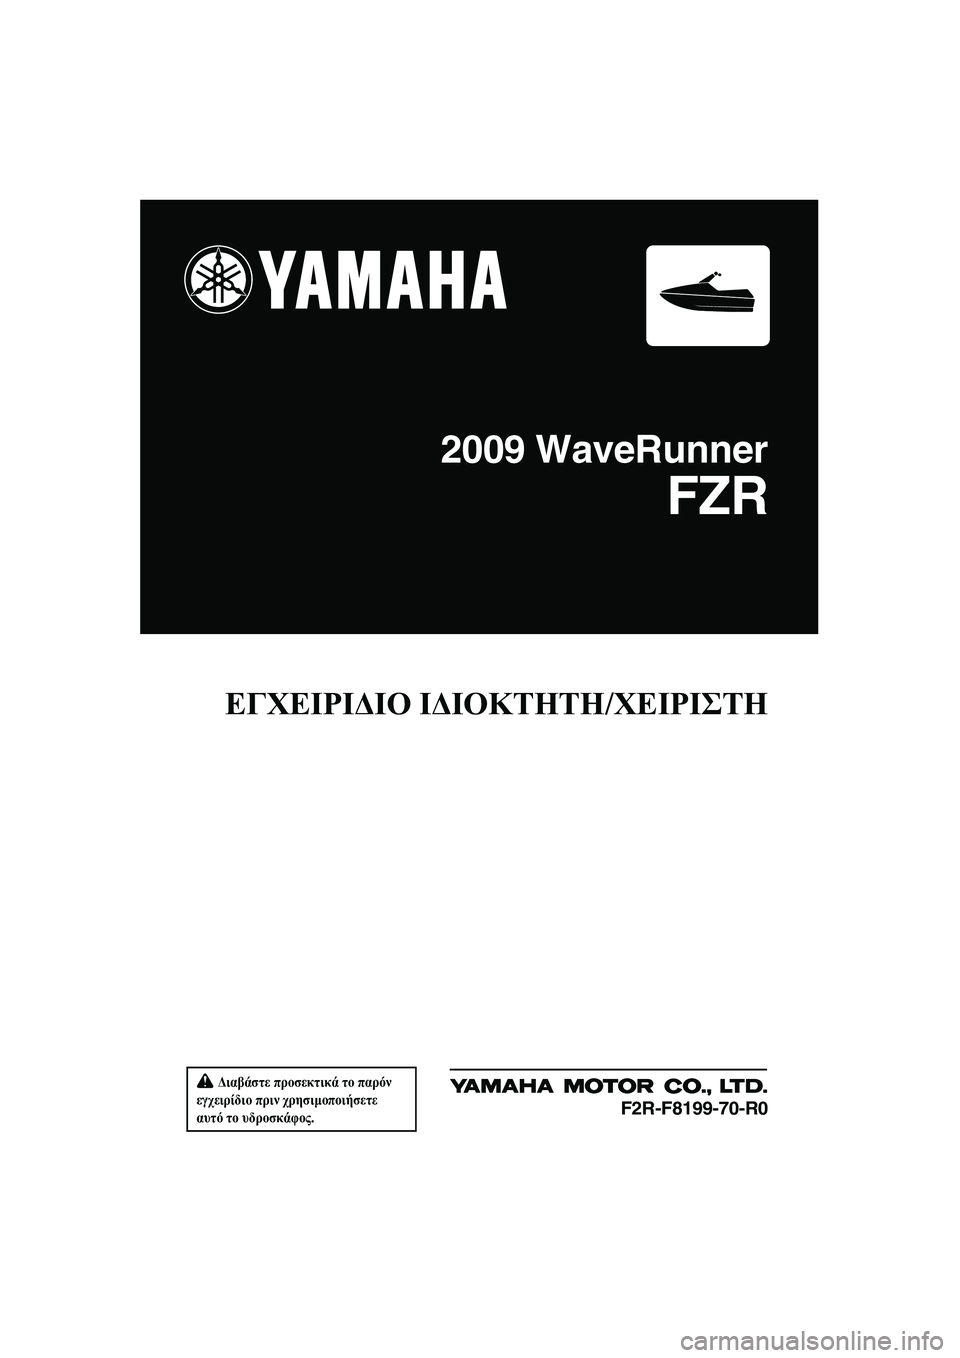 YAMAHA FZR 2009  ΟΔΗΓΌΣ ΧΡΉΣΗΣ (in Greek)  ∆ιαβάστε προσεκτικά το παρόν 
εγχειρίδιο πριν χρησιµοποιήσετε 
αυτό το υδροσκάφος.
ΕΓΧΕΙΡΙ∆ΙΟ Ι∆ΙΟΚΤΗΤΗ/Χ�